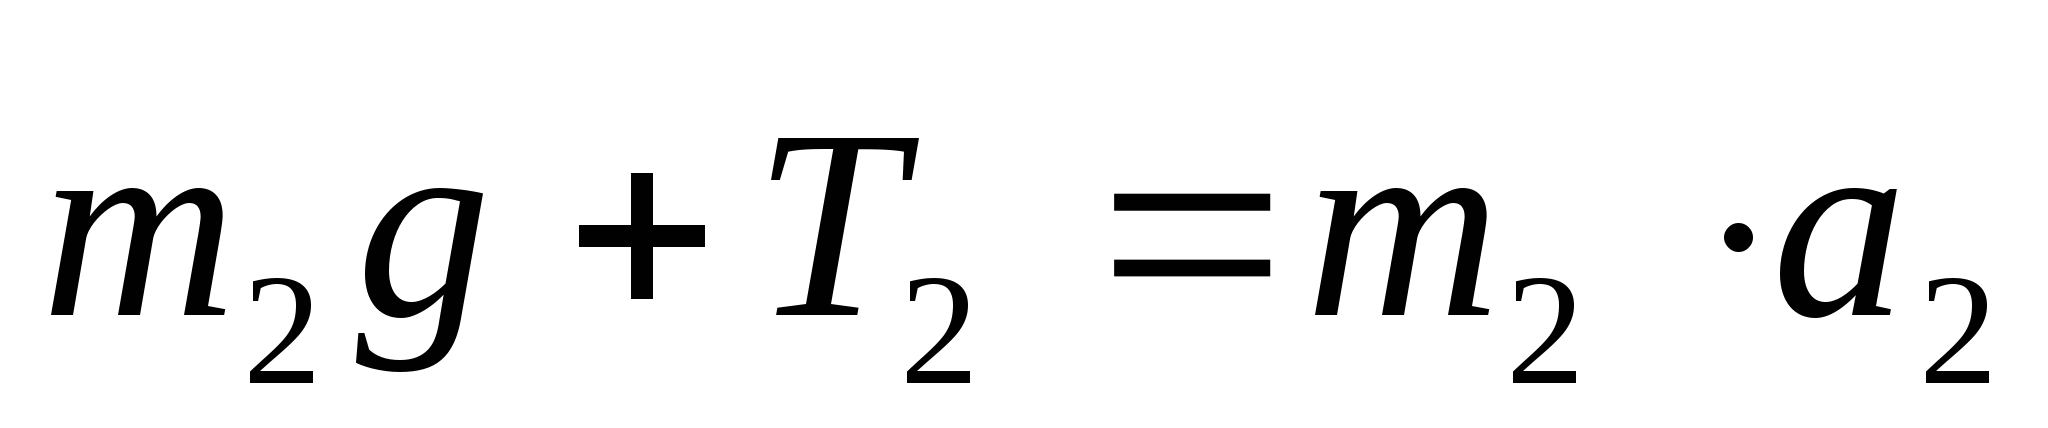 Поурочный план по физике Решение задач на 2 закон Ньютона